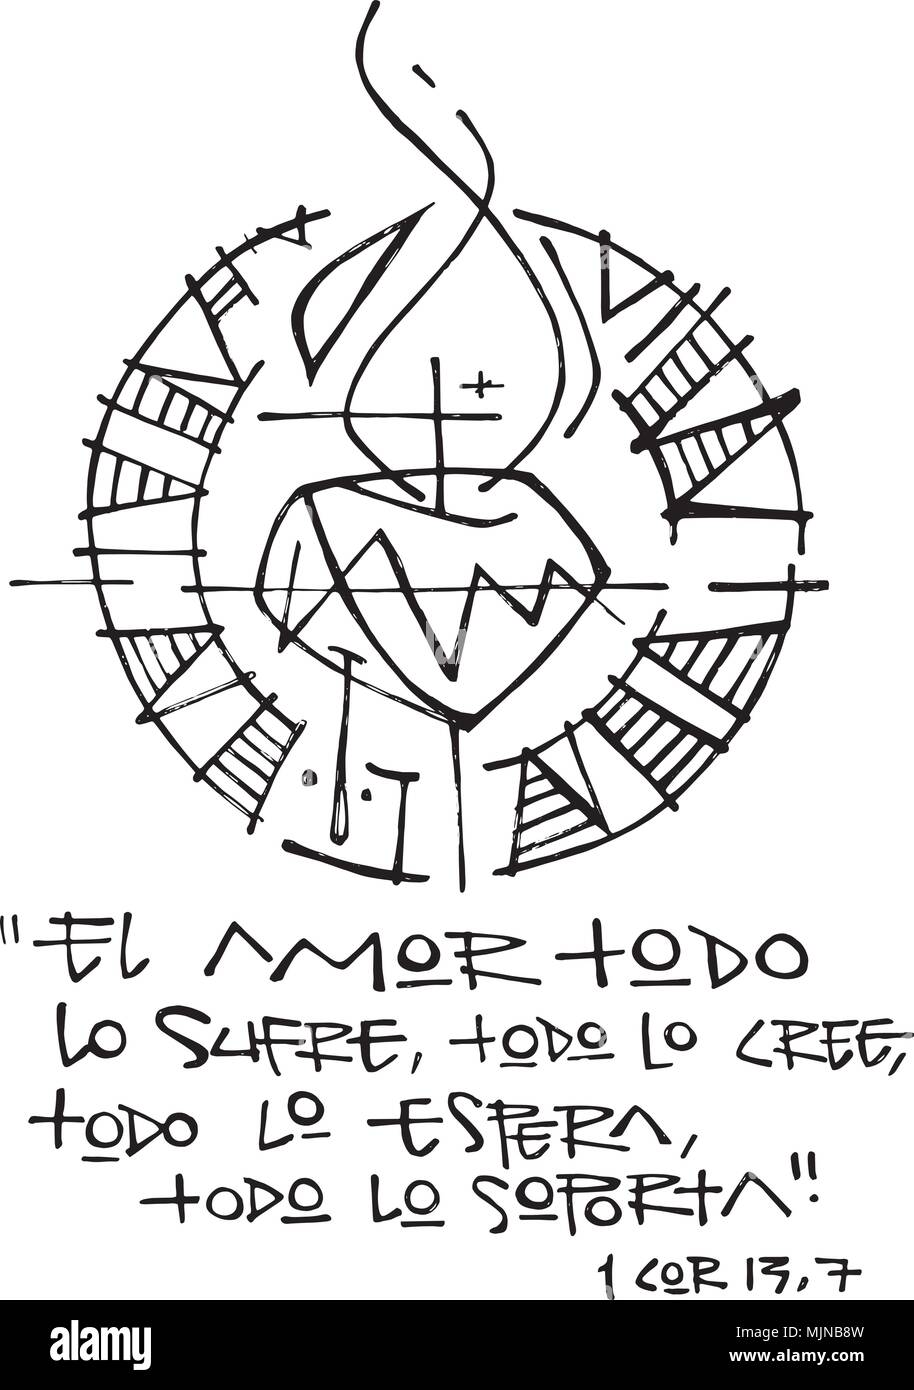 Hand gezeichnet Abbildung oder Zeichnung eines religiösen Ausdruck in Spanisch, dass bedeutet: Liebe alle, glaubt, daß alle leidet, wartet, steht für alle Stock Vektor